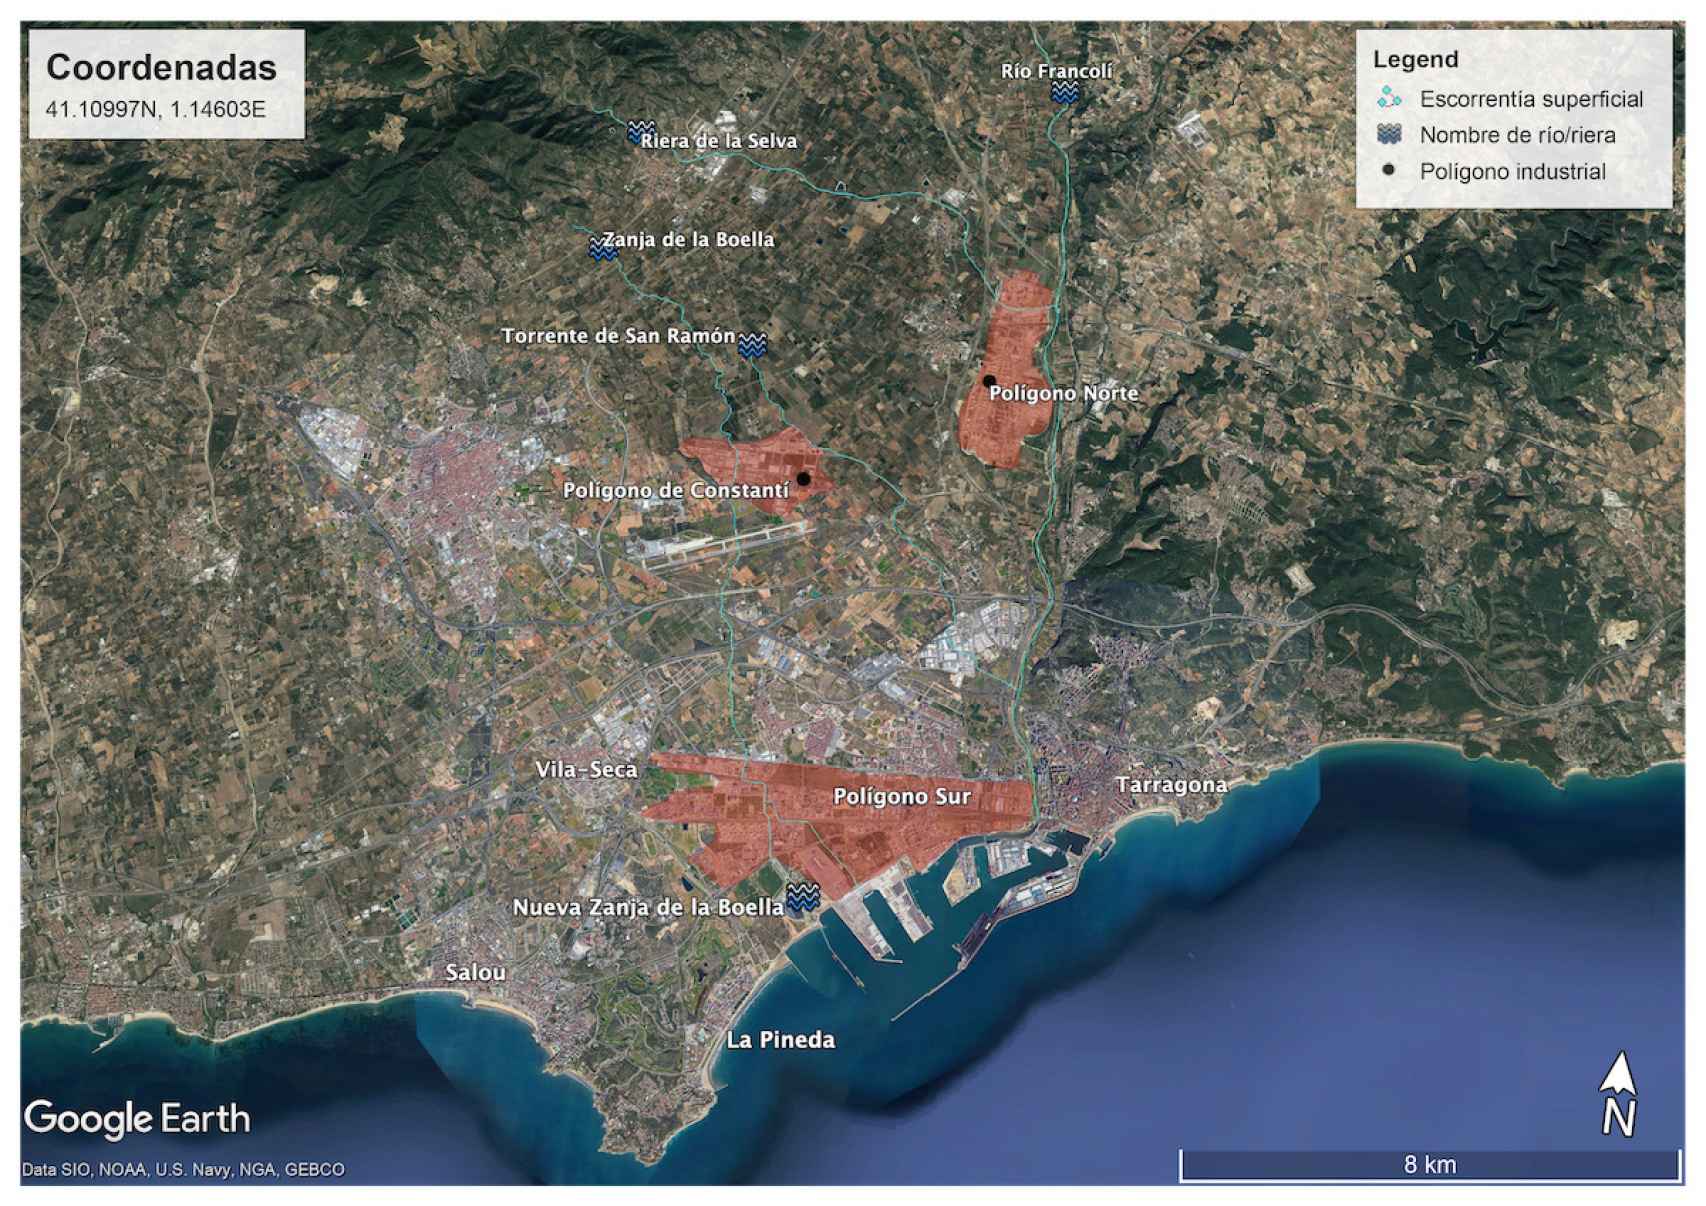 Imagen satélite de los polígonos industriales en la zona de Tarragona.